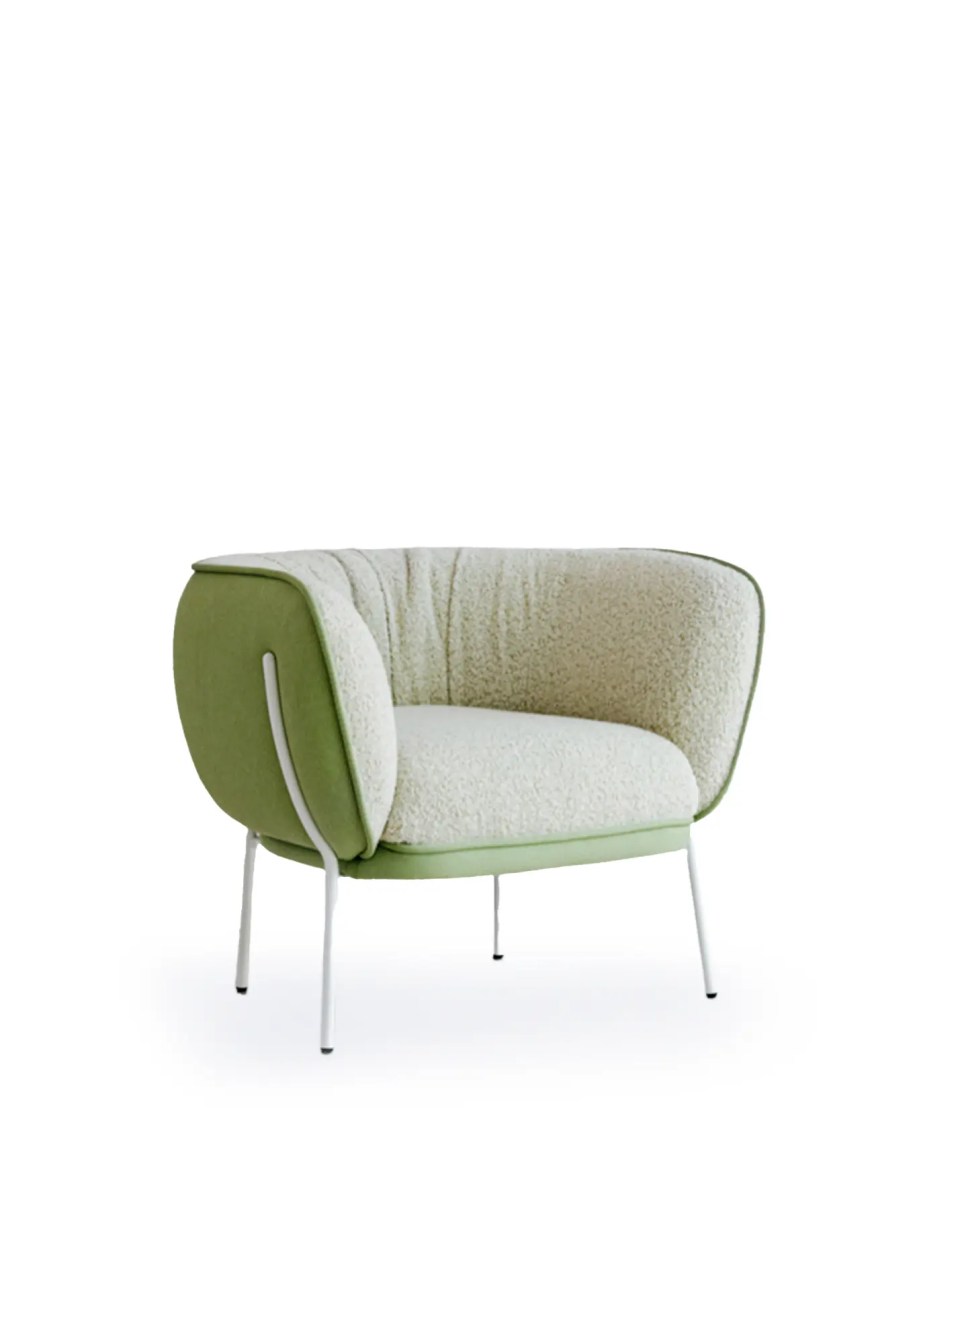 fauteuil bouclette 1 place beige naturel et vert ultra confortable sur fond blanc